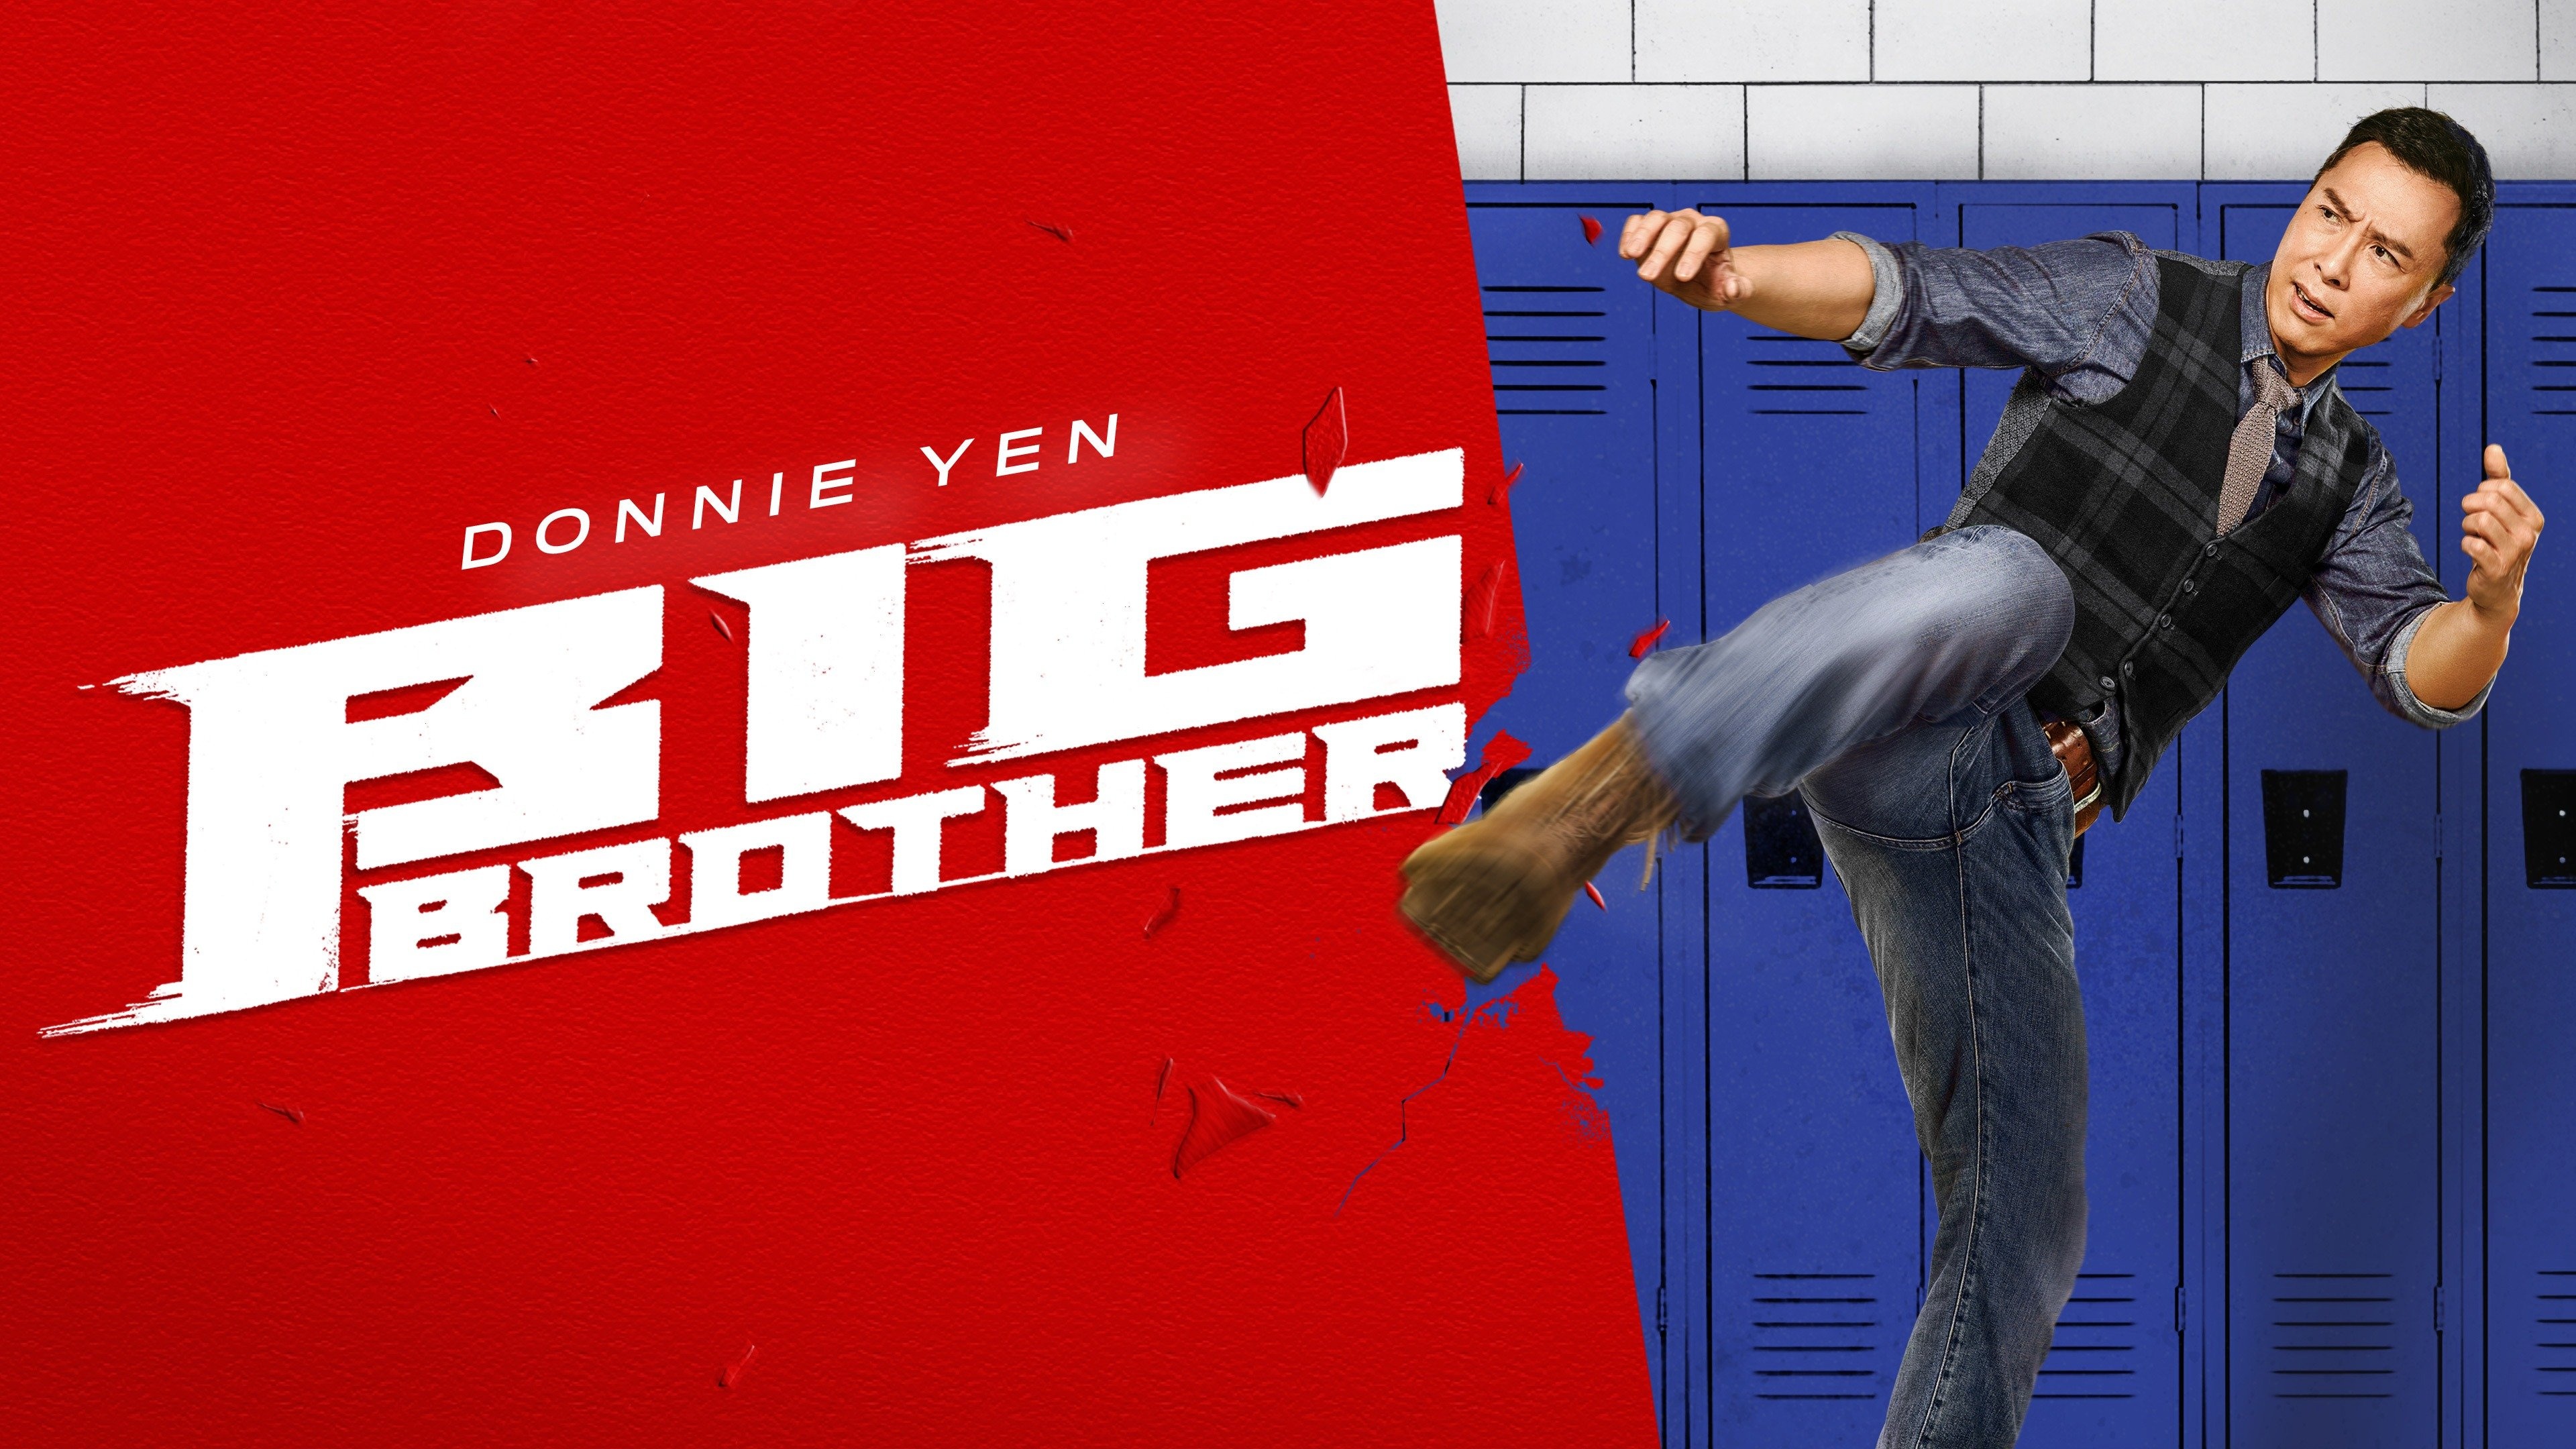 Donnie Yen, Big Brother 2018, Full Movie, Free Online, 3840x2160 4K Desktop